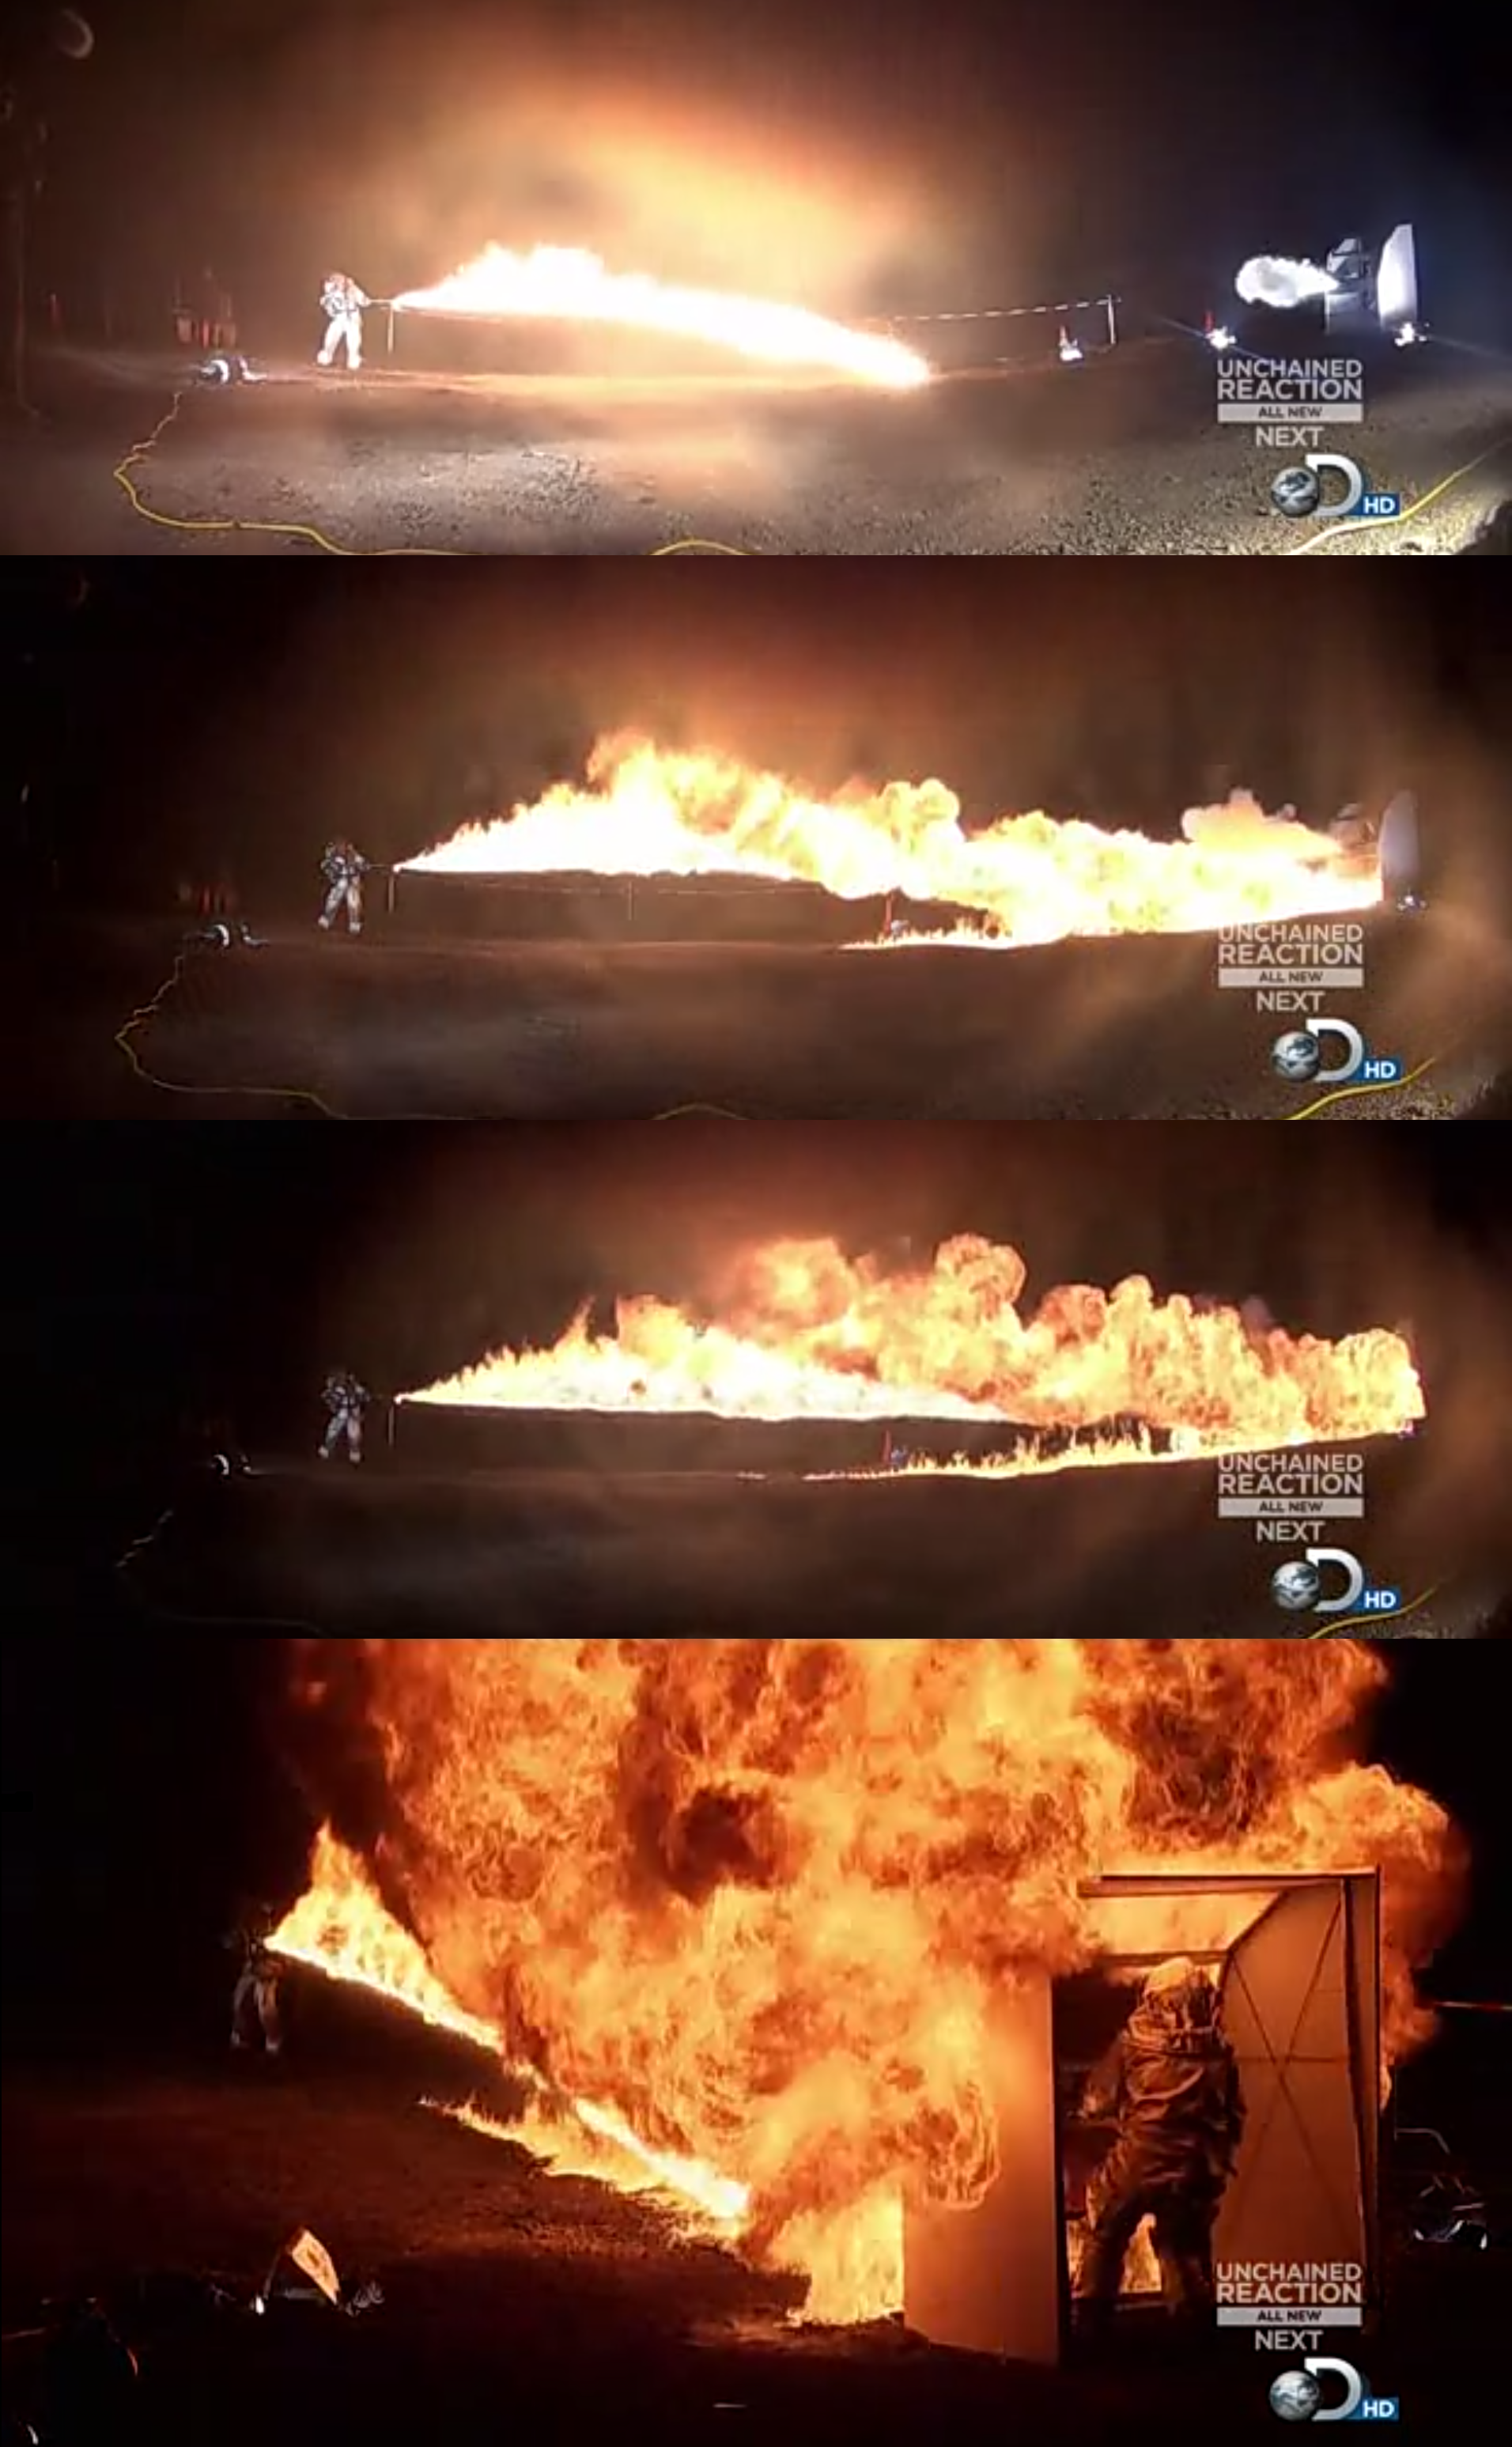 Flamethrower+vs+fire+extinguisher+help+t